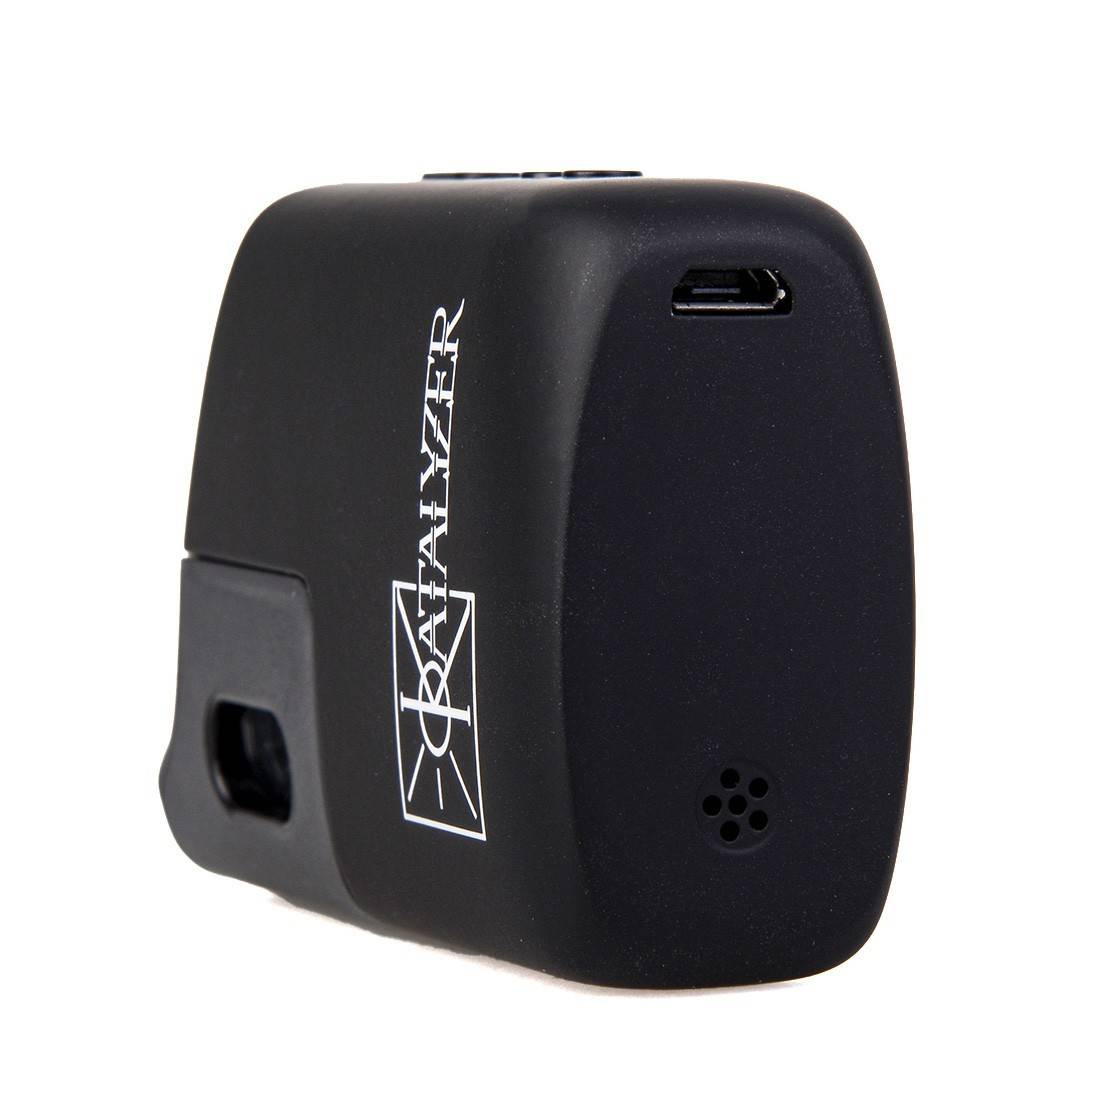 Vaporisateur Portable Fenix Mini Dee Pro X Katalyzer - Disponible chez S  Factory